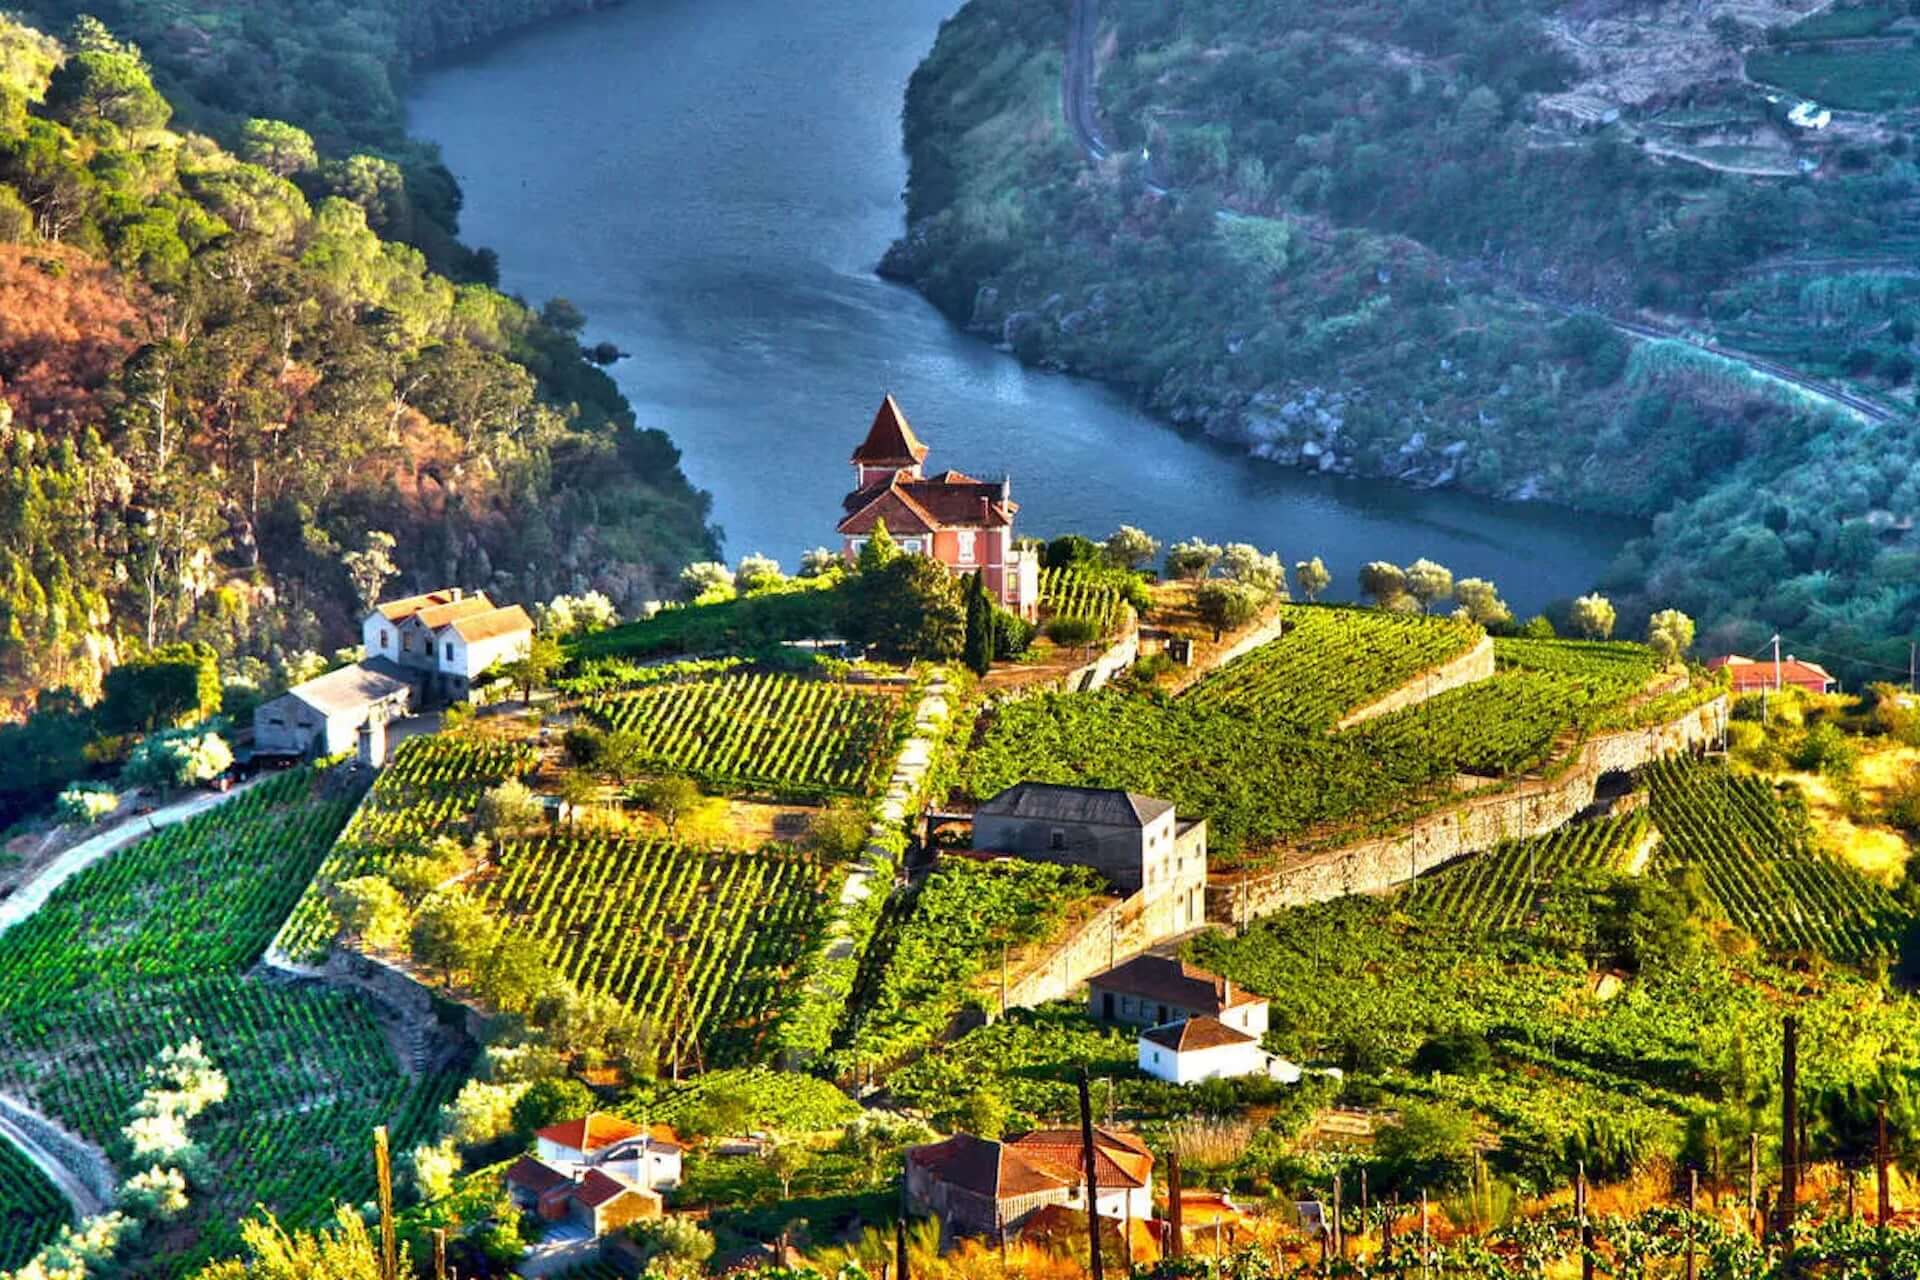 La vallée du Douro au Portugal